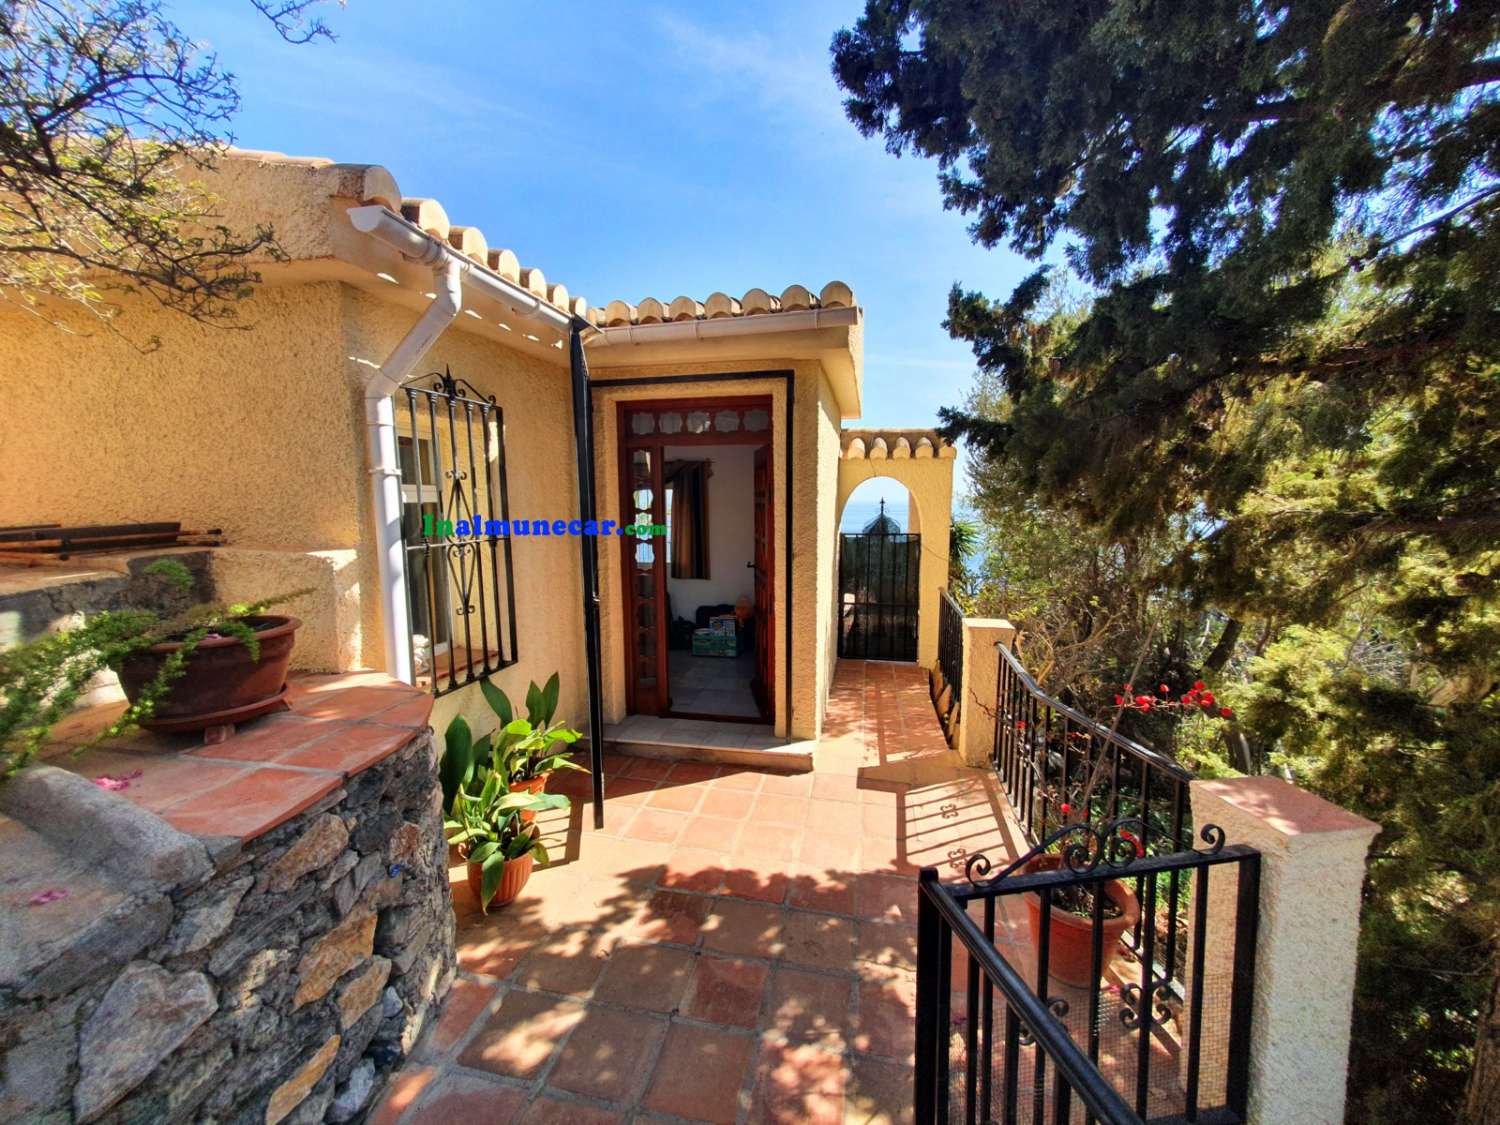 Exclusiva villa en venta en Cotobro - Almuñécar, con  inmejorables y privilegiadas vistas.